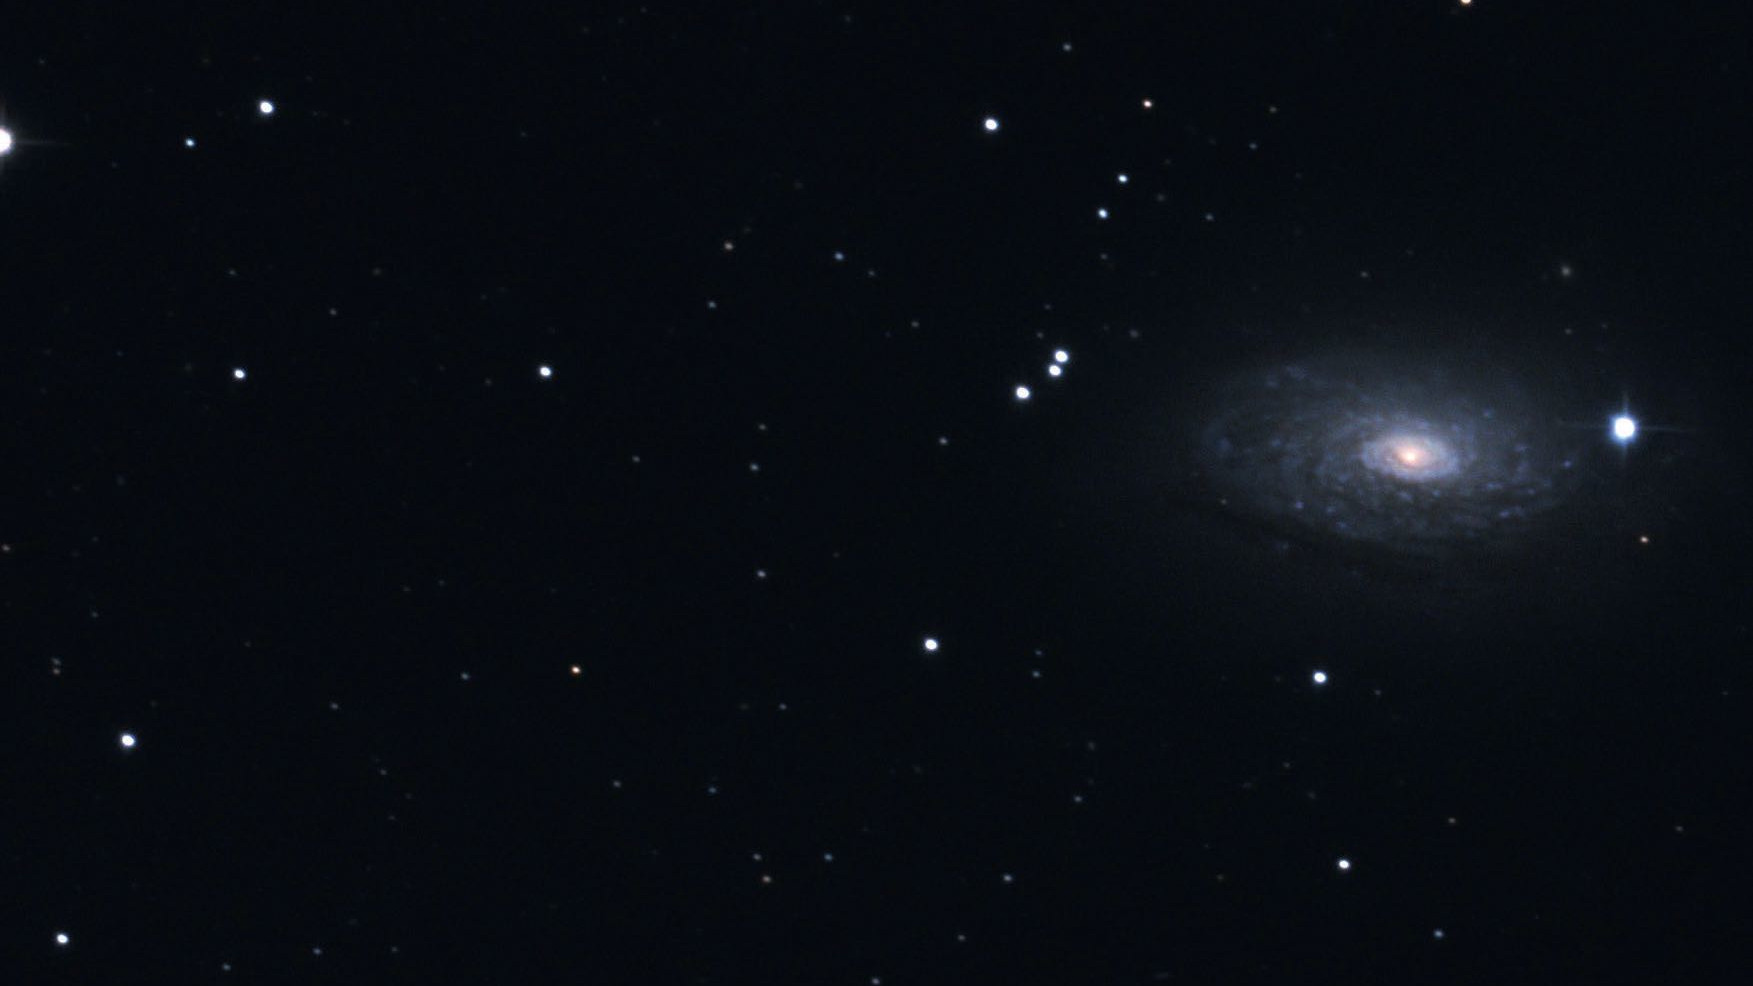 W lornetce prawie jak gwiazda podwójna, ale zdjęcia ujawniają galaktyczną naturę M63. Marcus Degenkolbe